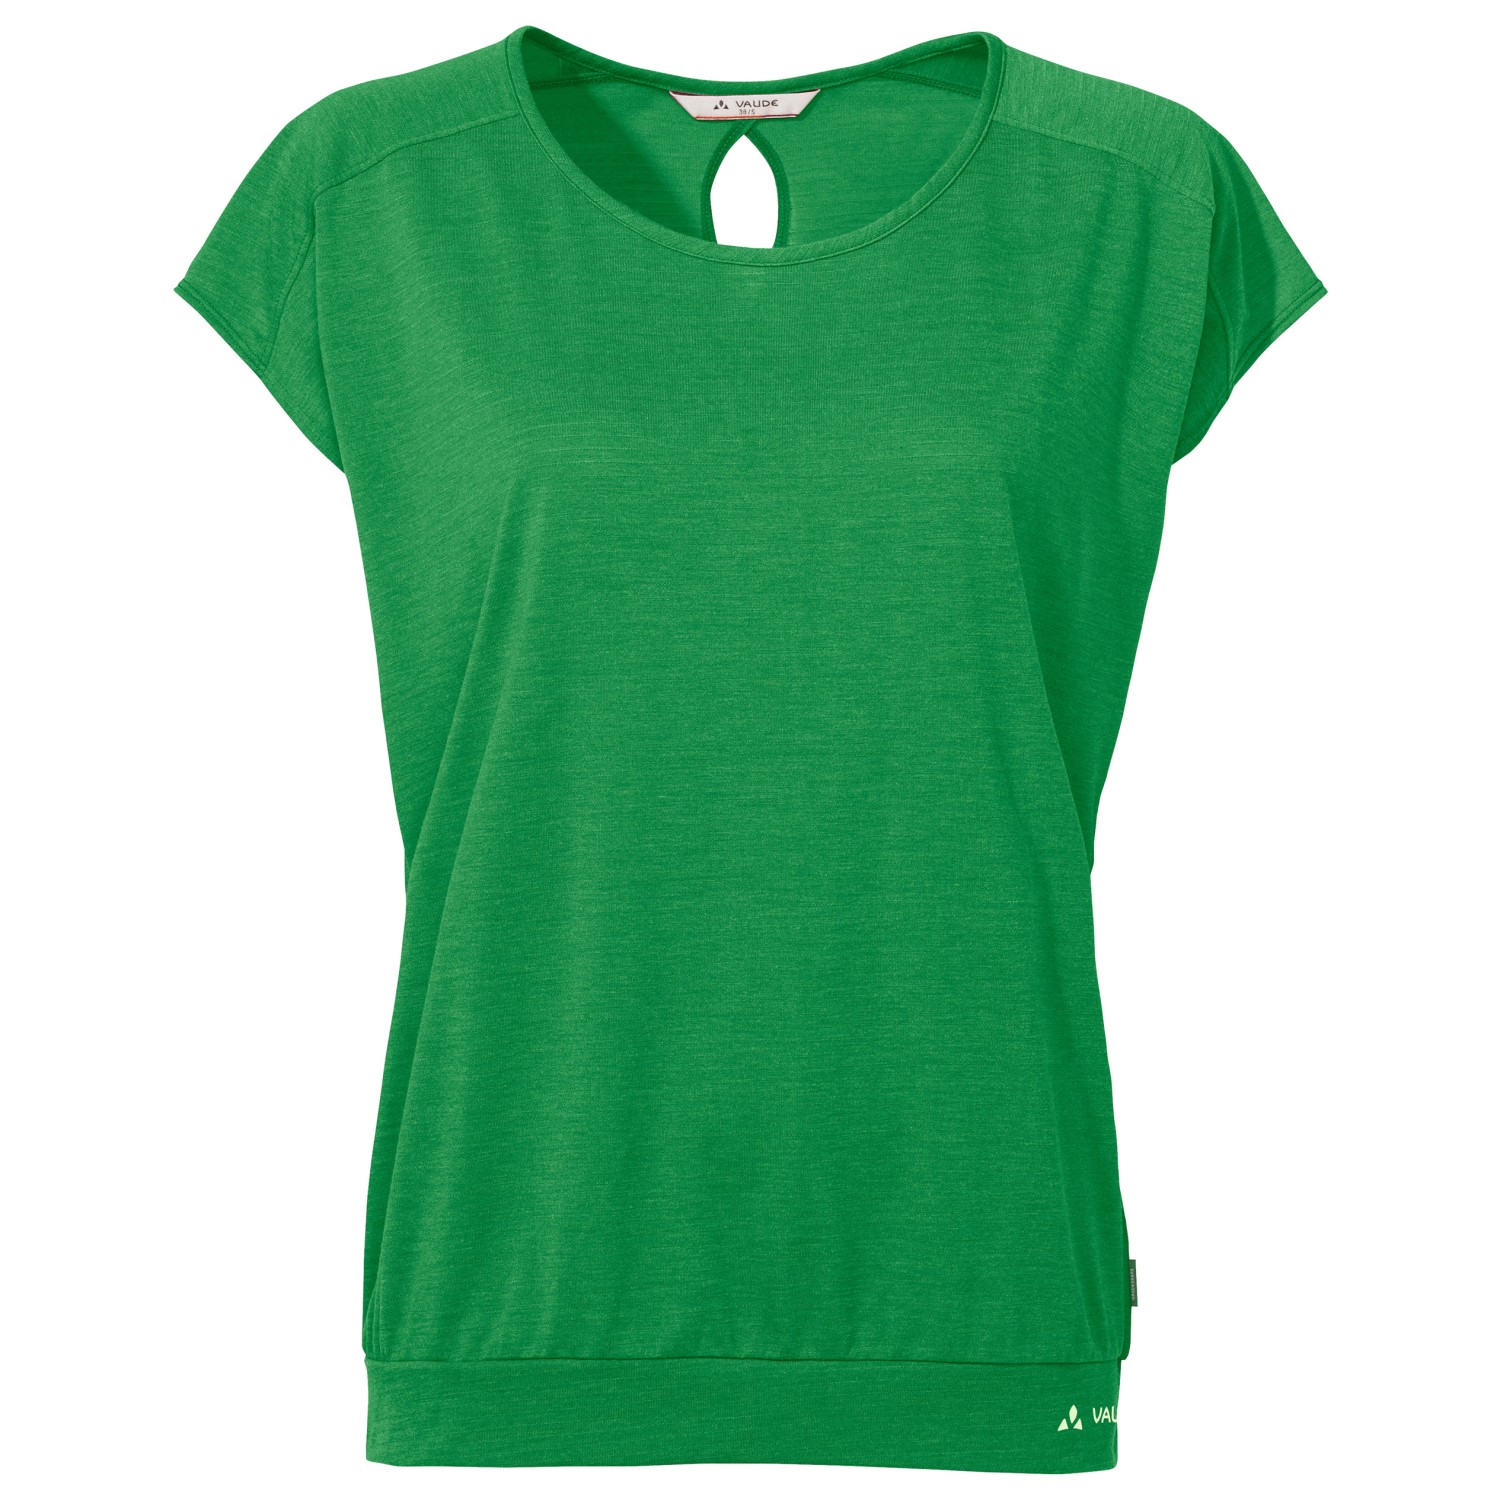 Функциональная рубашка Vaude Women's Skomer T Shirt III, цвет Apple Green функциональная рубашка vaude tekoa t shirt iii цвет nordic blue